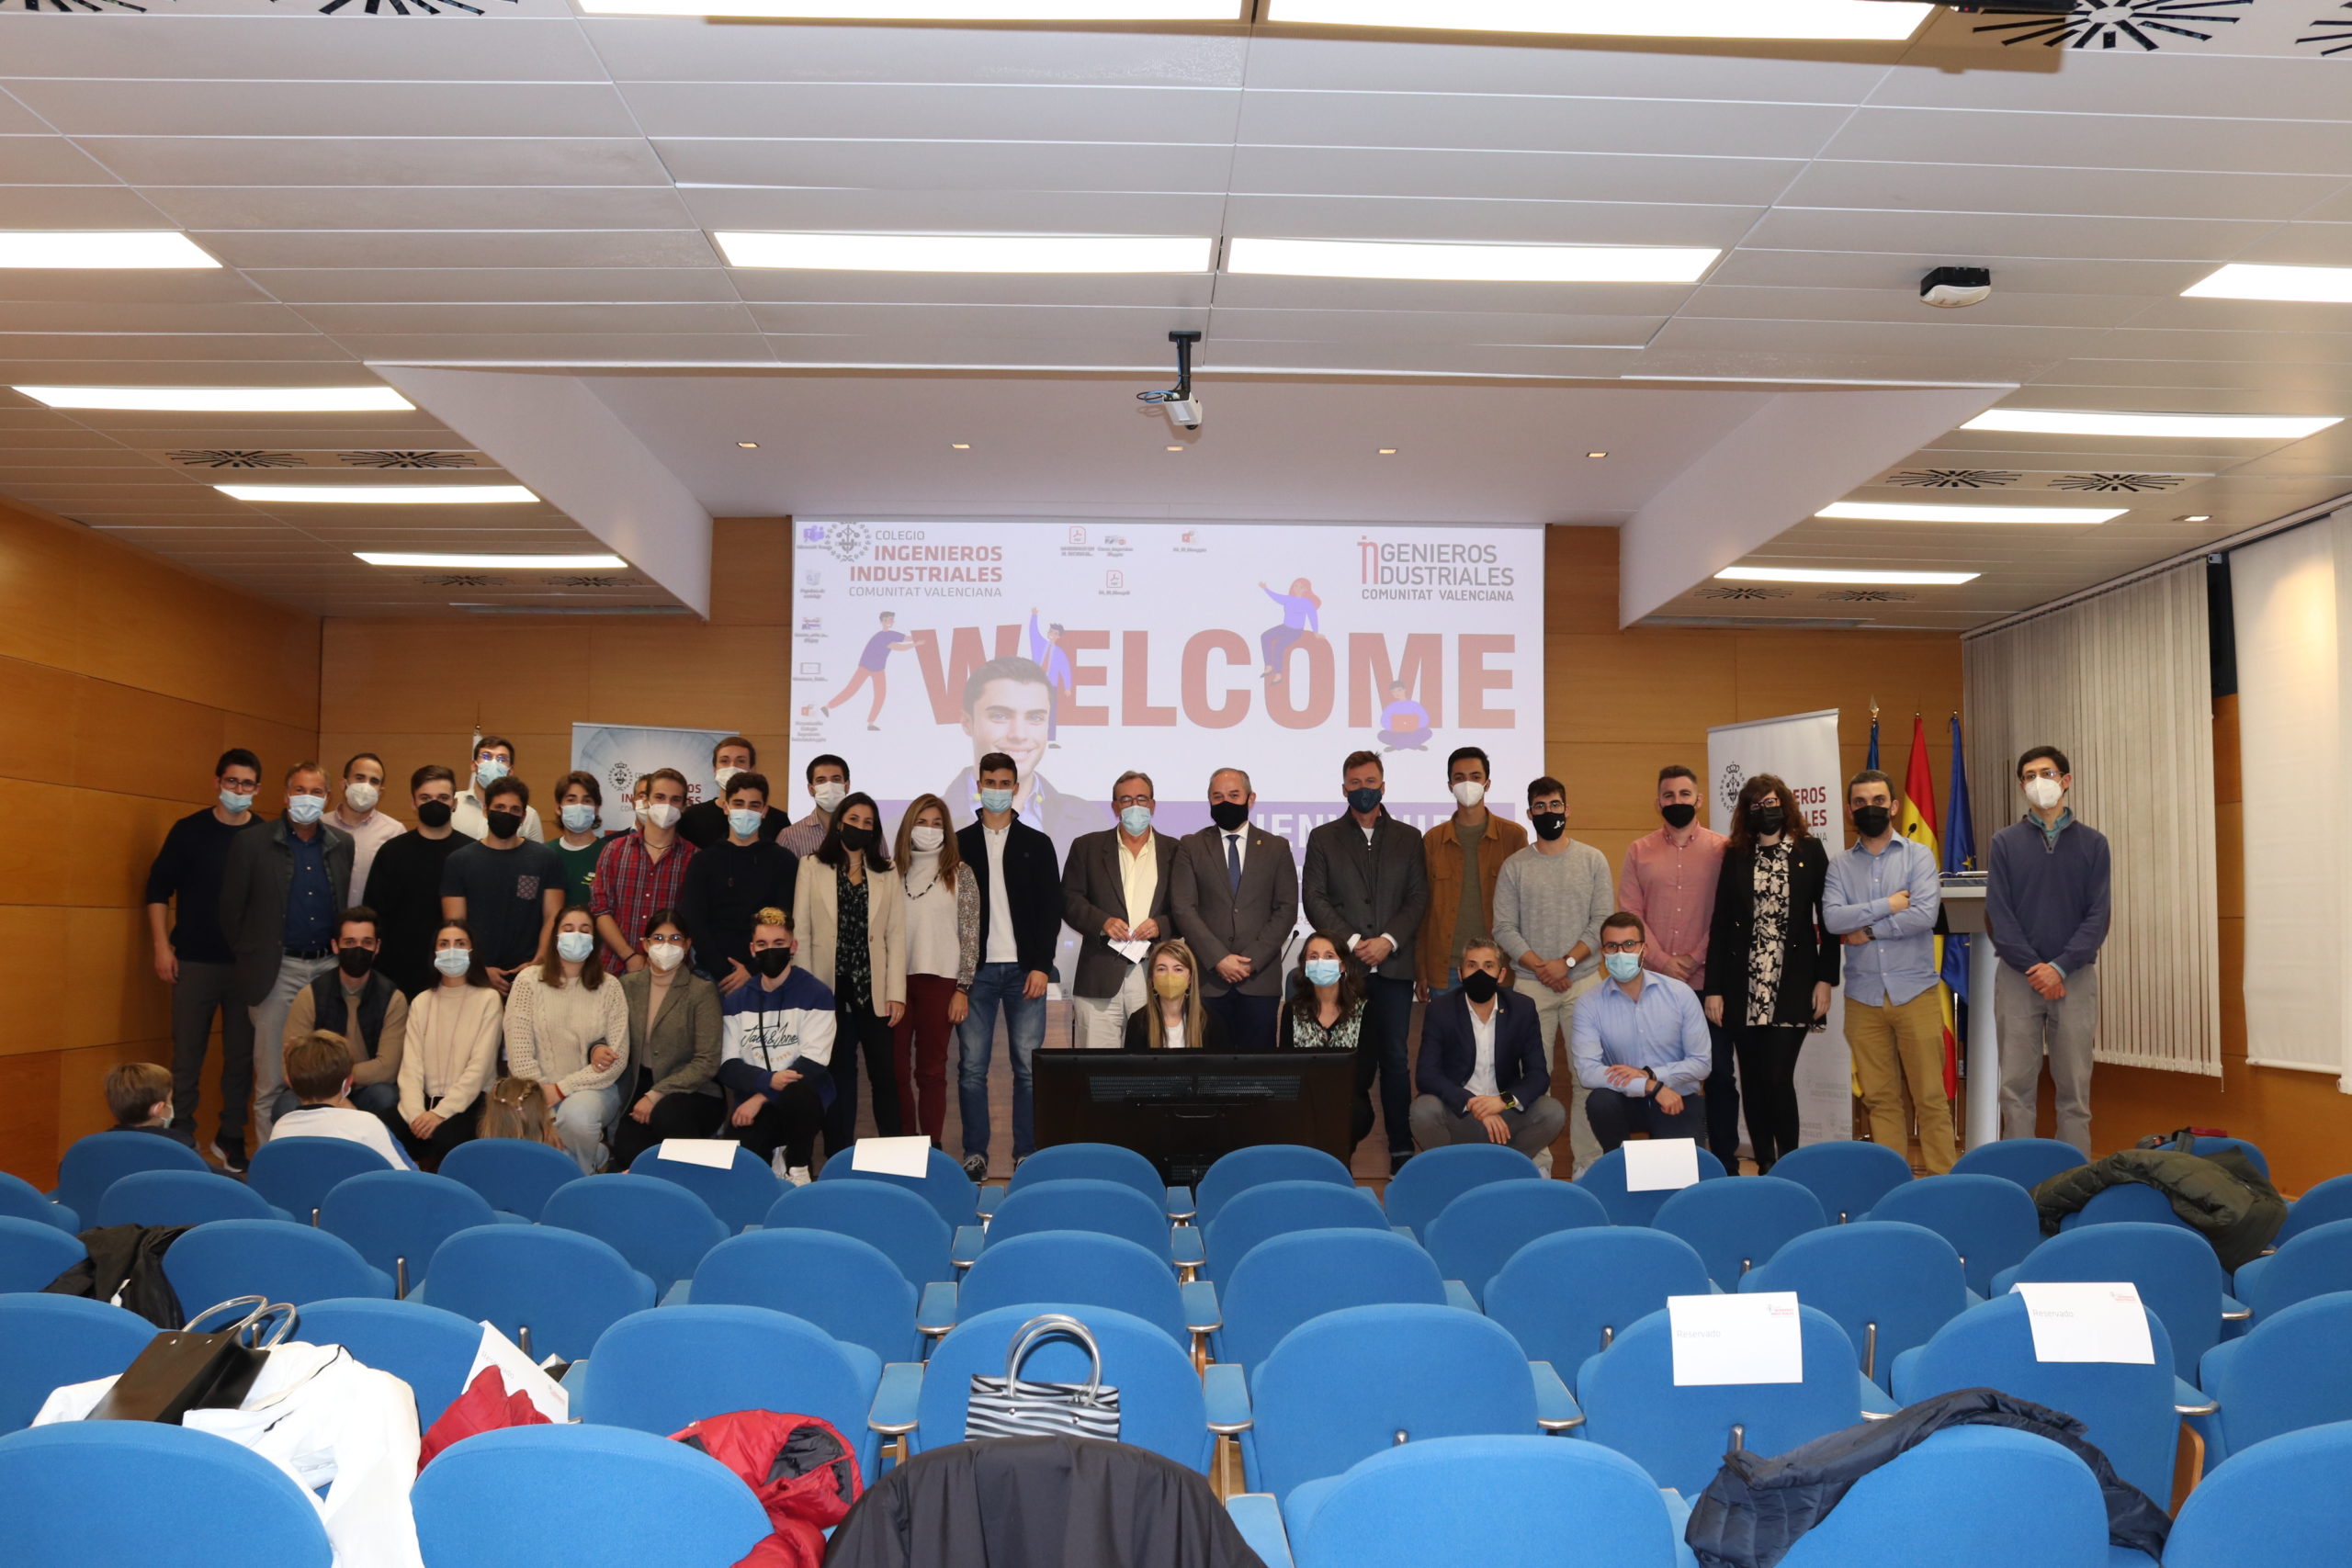 El COIICV abre la puerta a una nueva generación de colegiados y estudiantes asociados en su acto de bienvenida